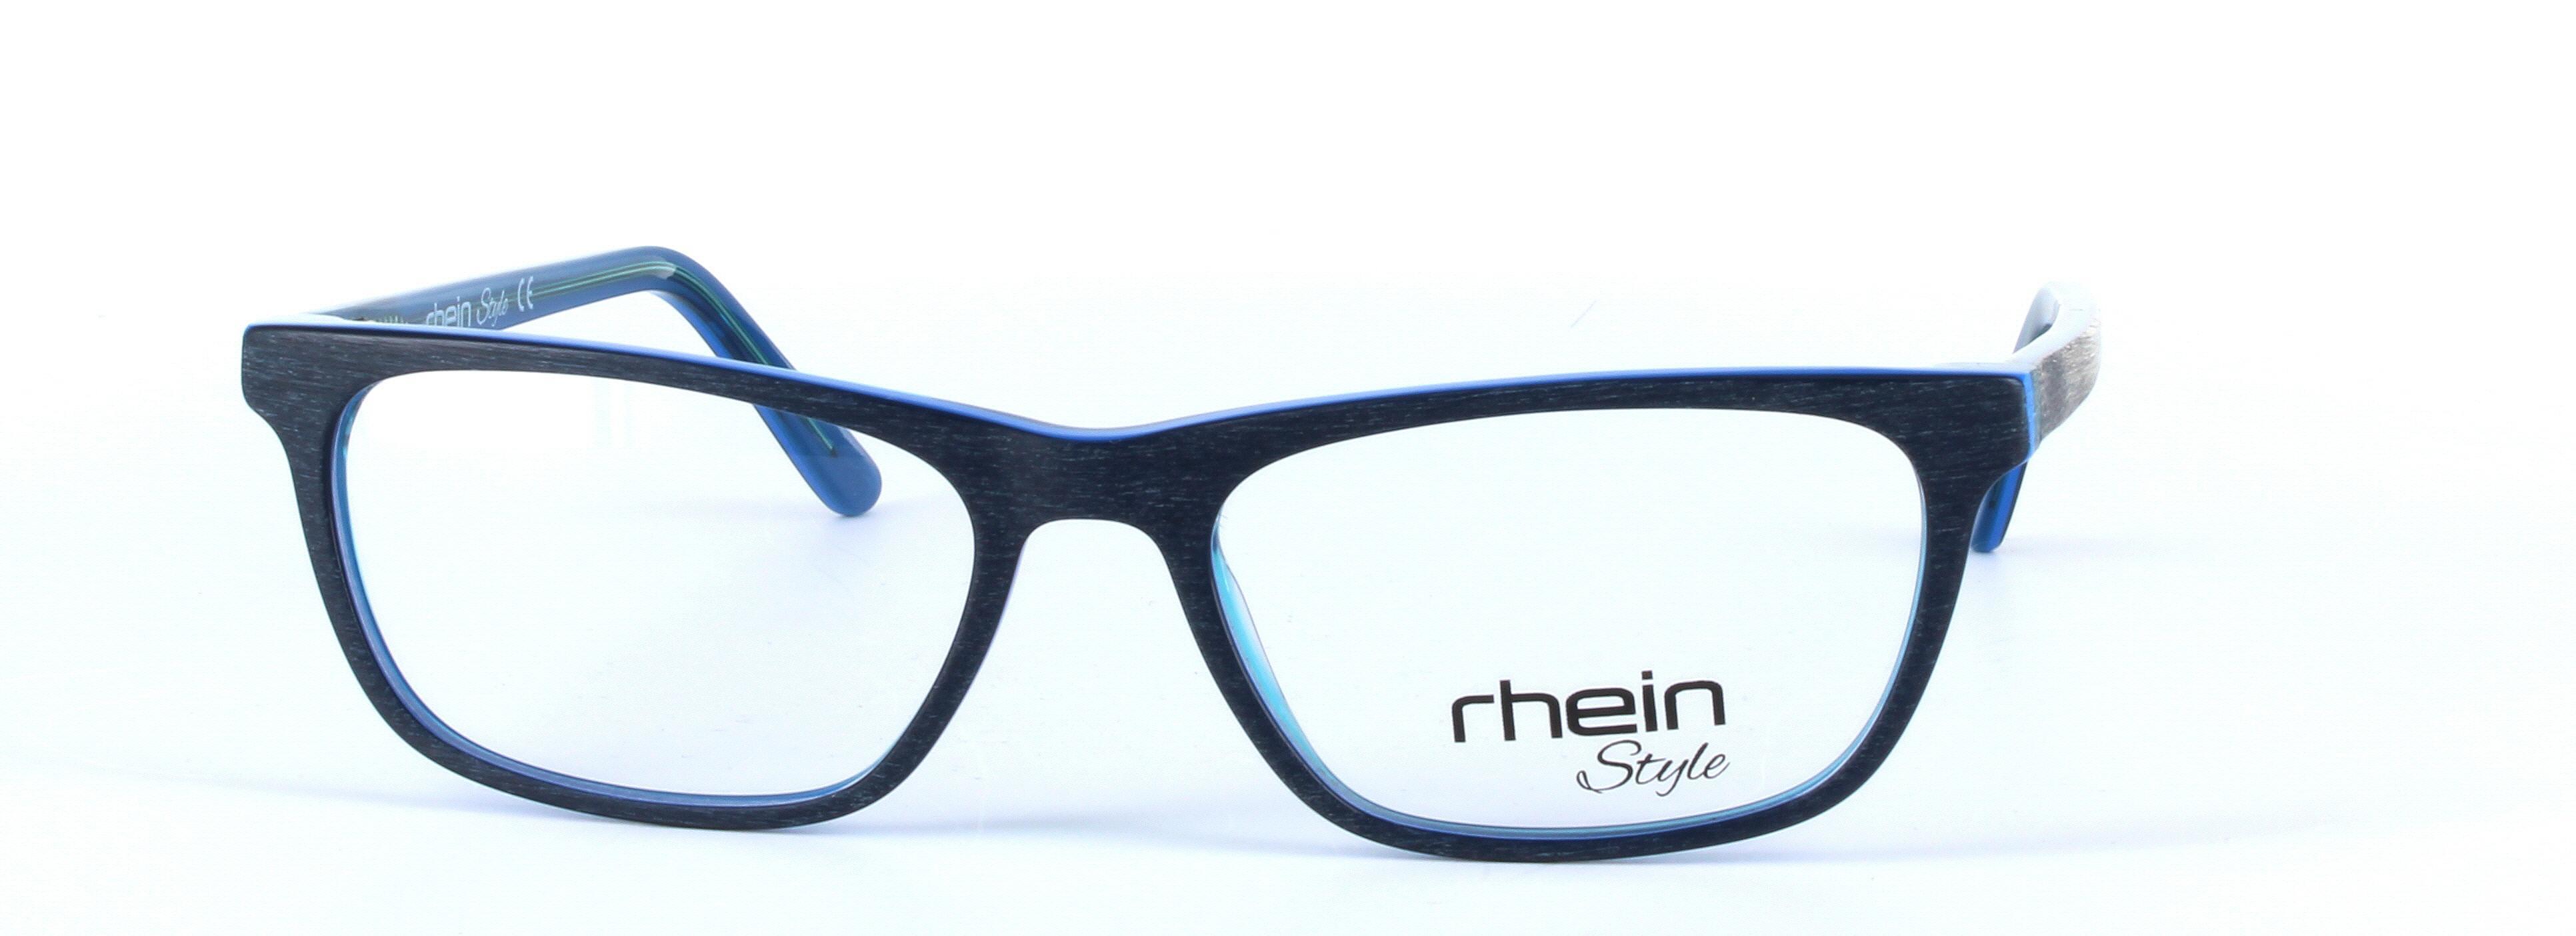 Filbert Blue Full Rim Oval Rectangular Plastic Glasses - Image View 5